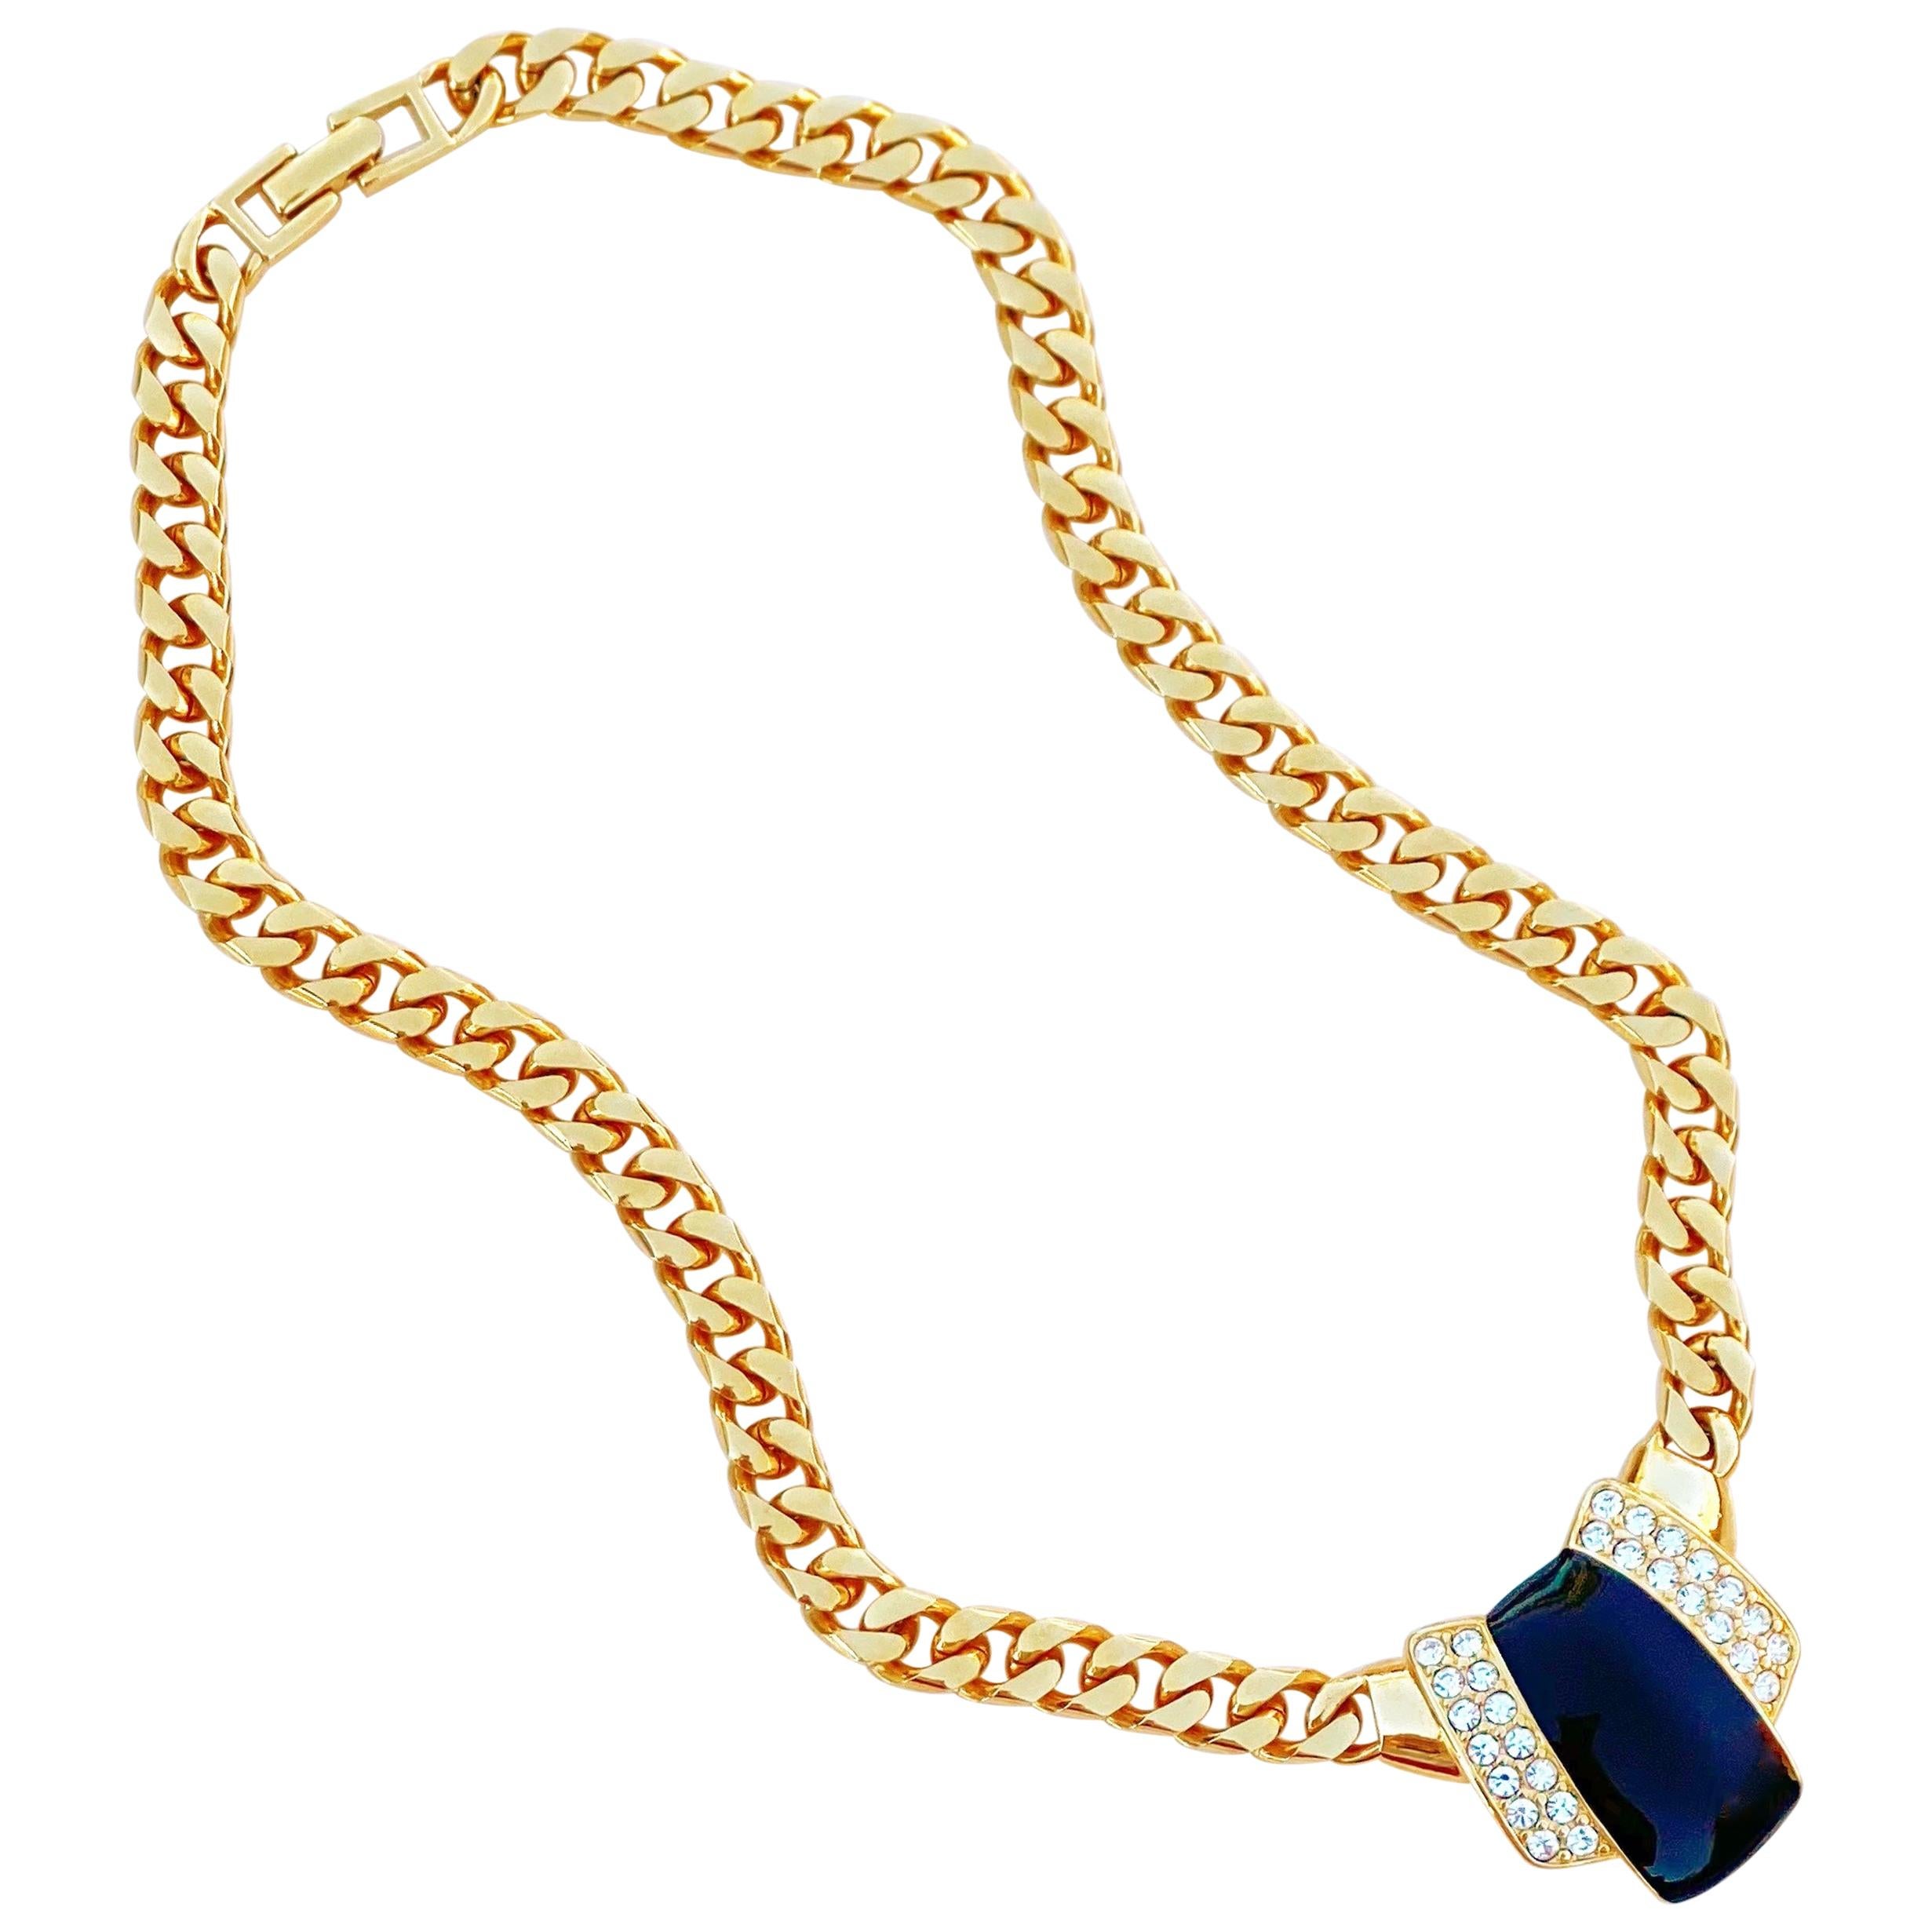 Vintage Gilt & Black Enamel Art Deco Style Curb Chain Necklace By Monet, 1980s